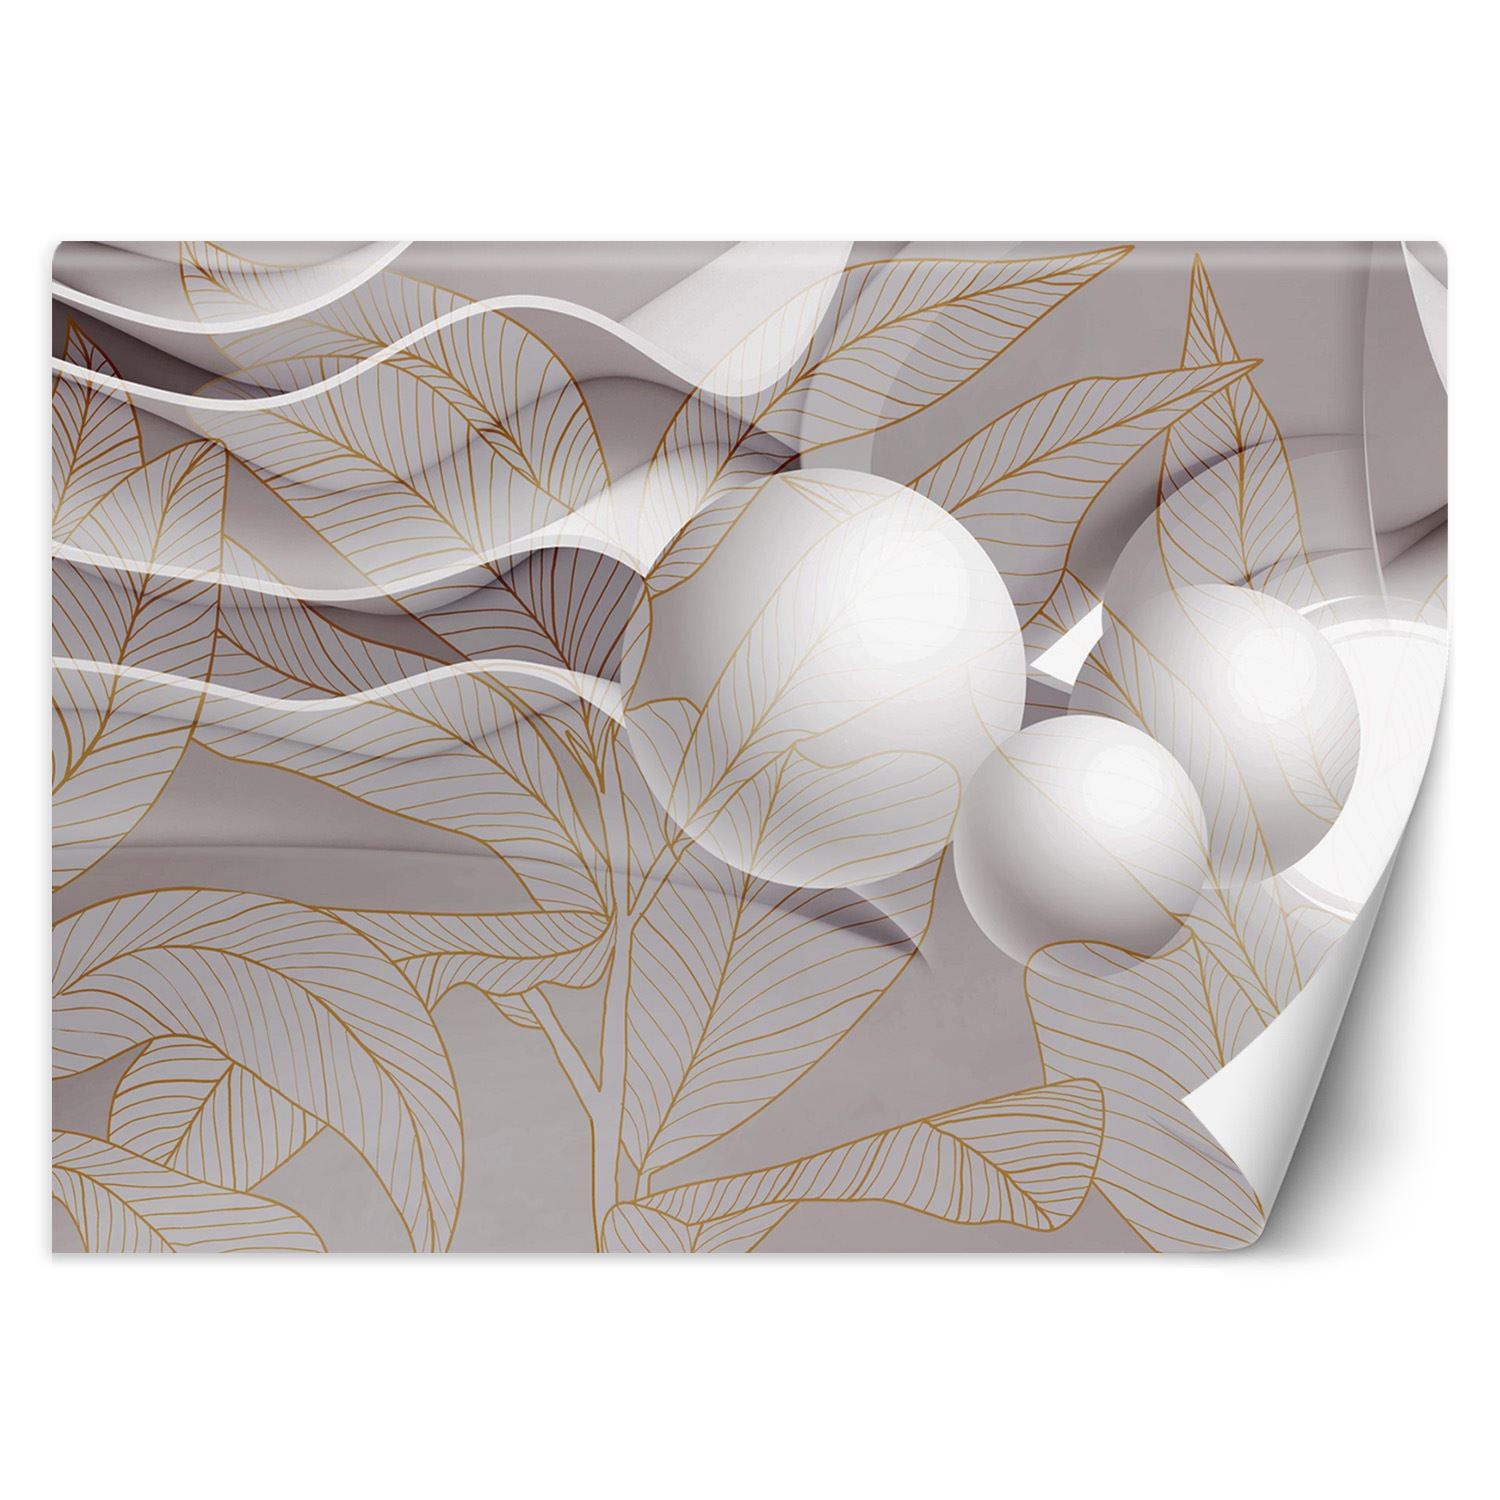 Trend24 – Behang – Goudbladeren En Ballen 3D – Vliesbehang – Fotobehang 3D – Behang Woonkamer – 400x280x2 cm – Incl. behanglijm